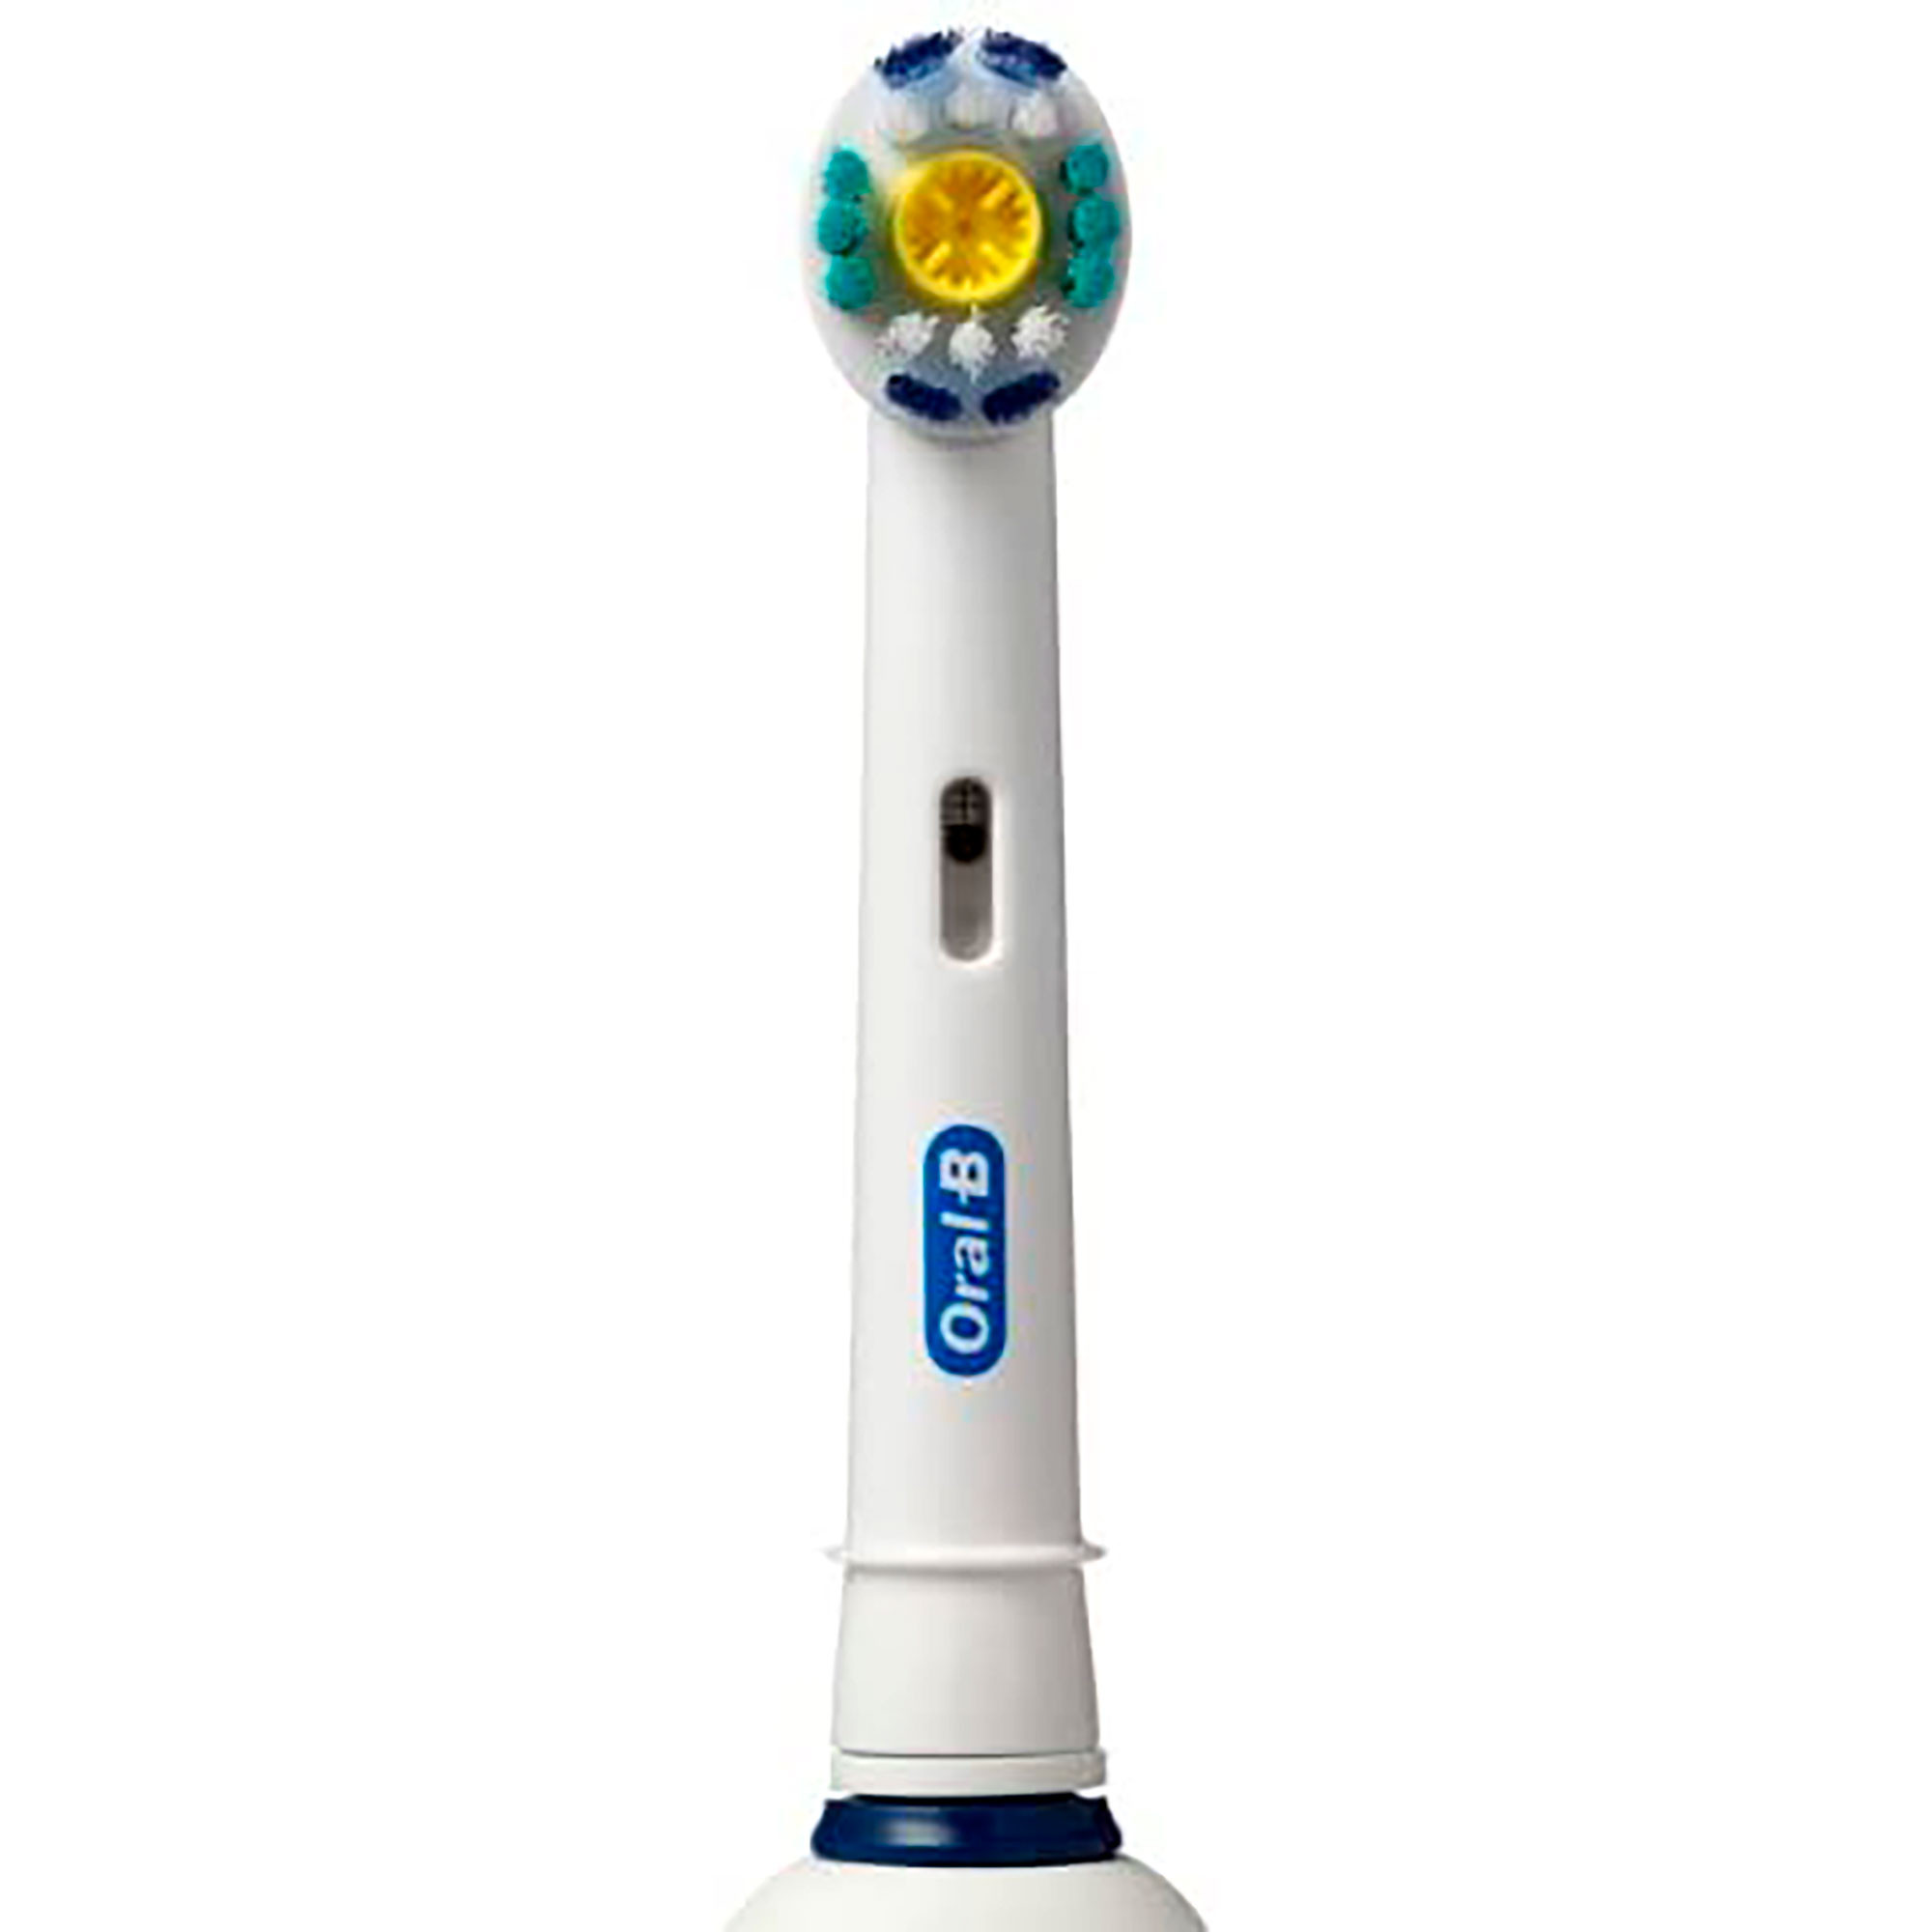 ORAL B Repuesto cepillo eléctrico Oral-B sensitive 2 unidades